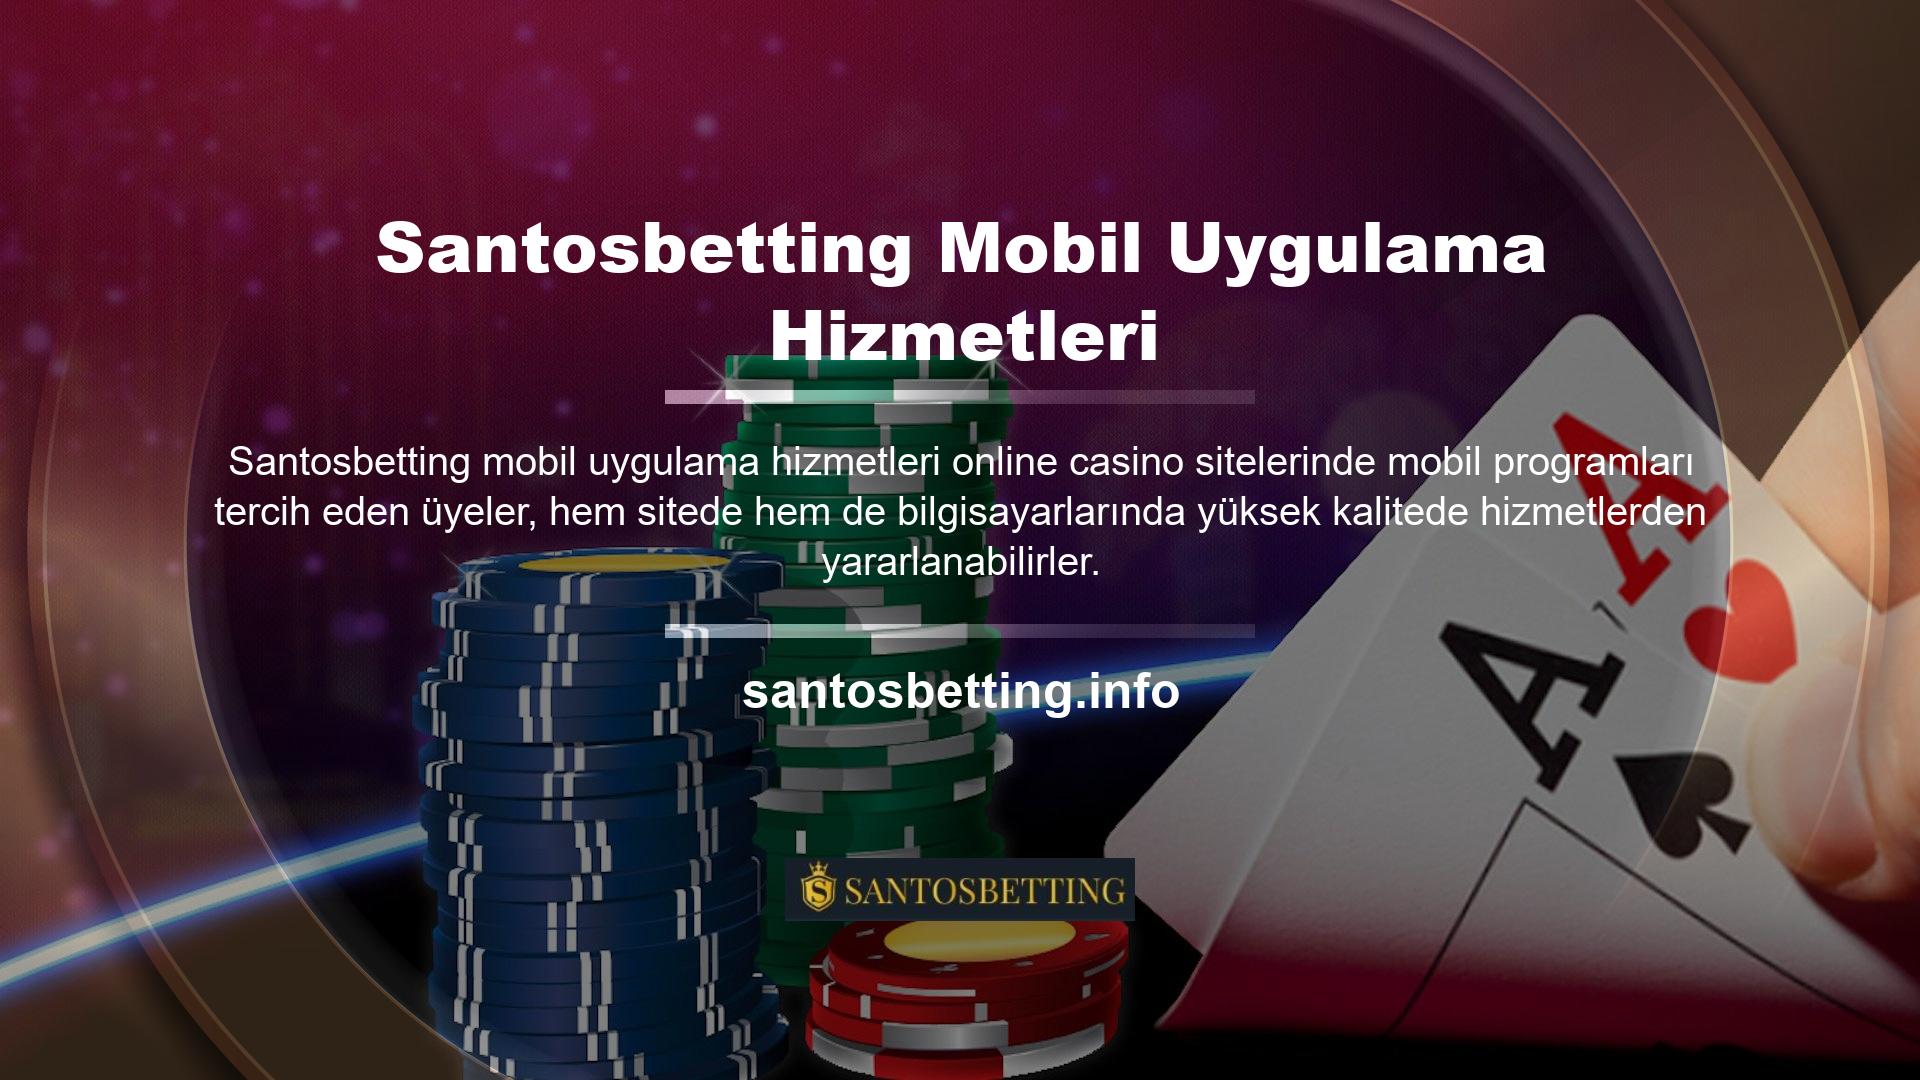 Aldığınız hizmet olan Santosbetting mobil uygulama hizmeti tamamen optimize edilmiştir